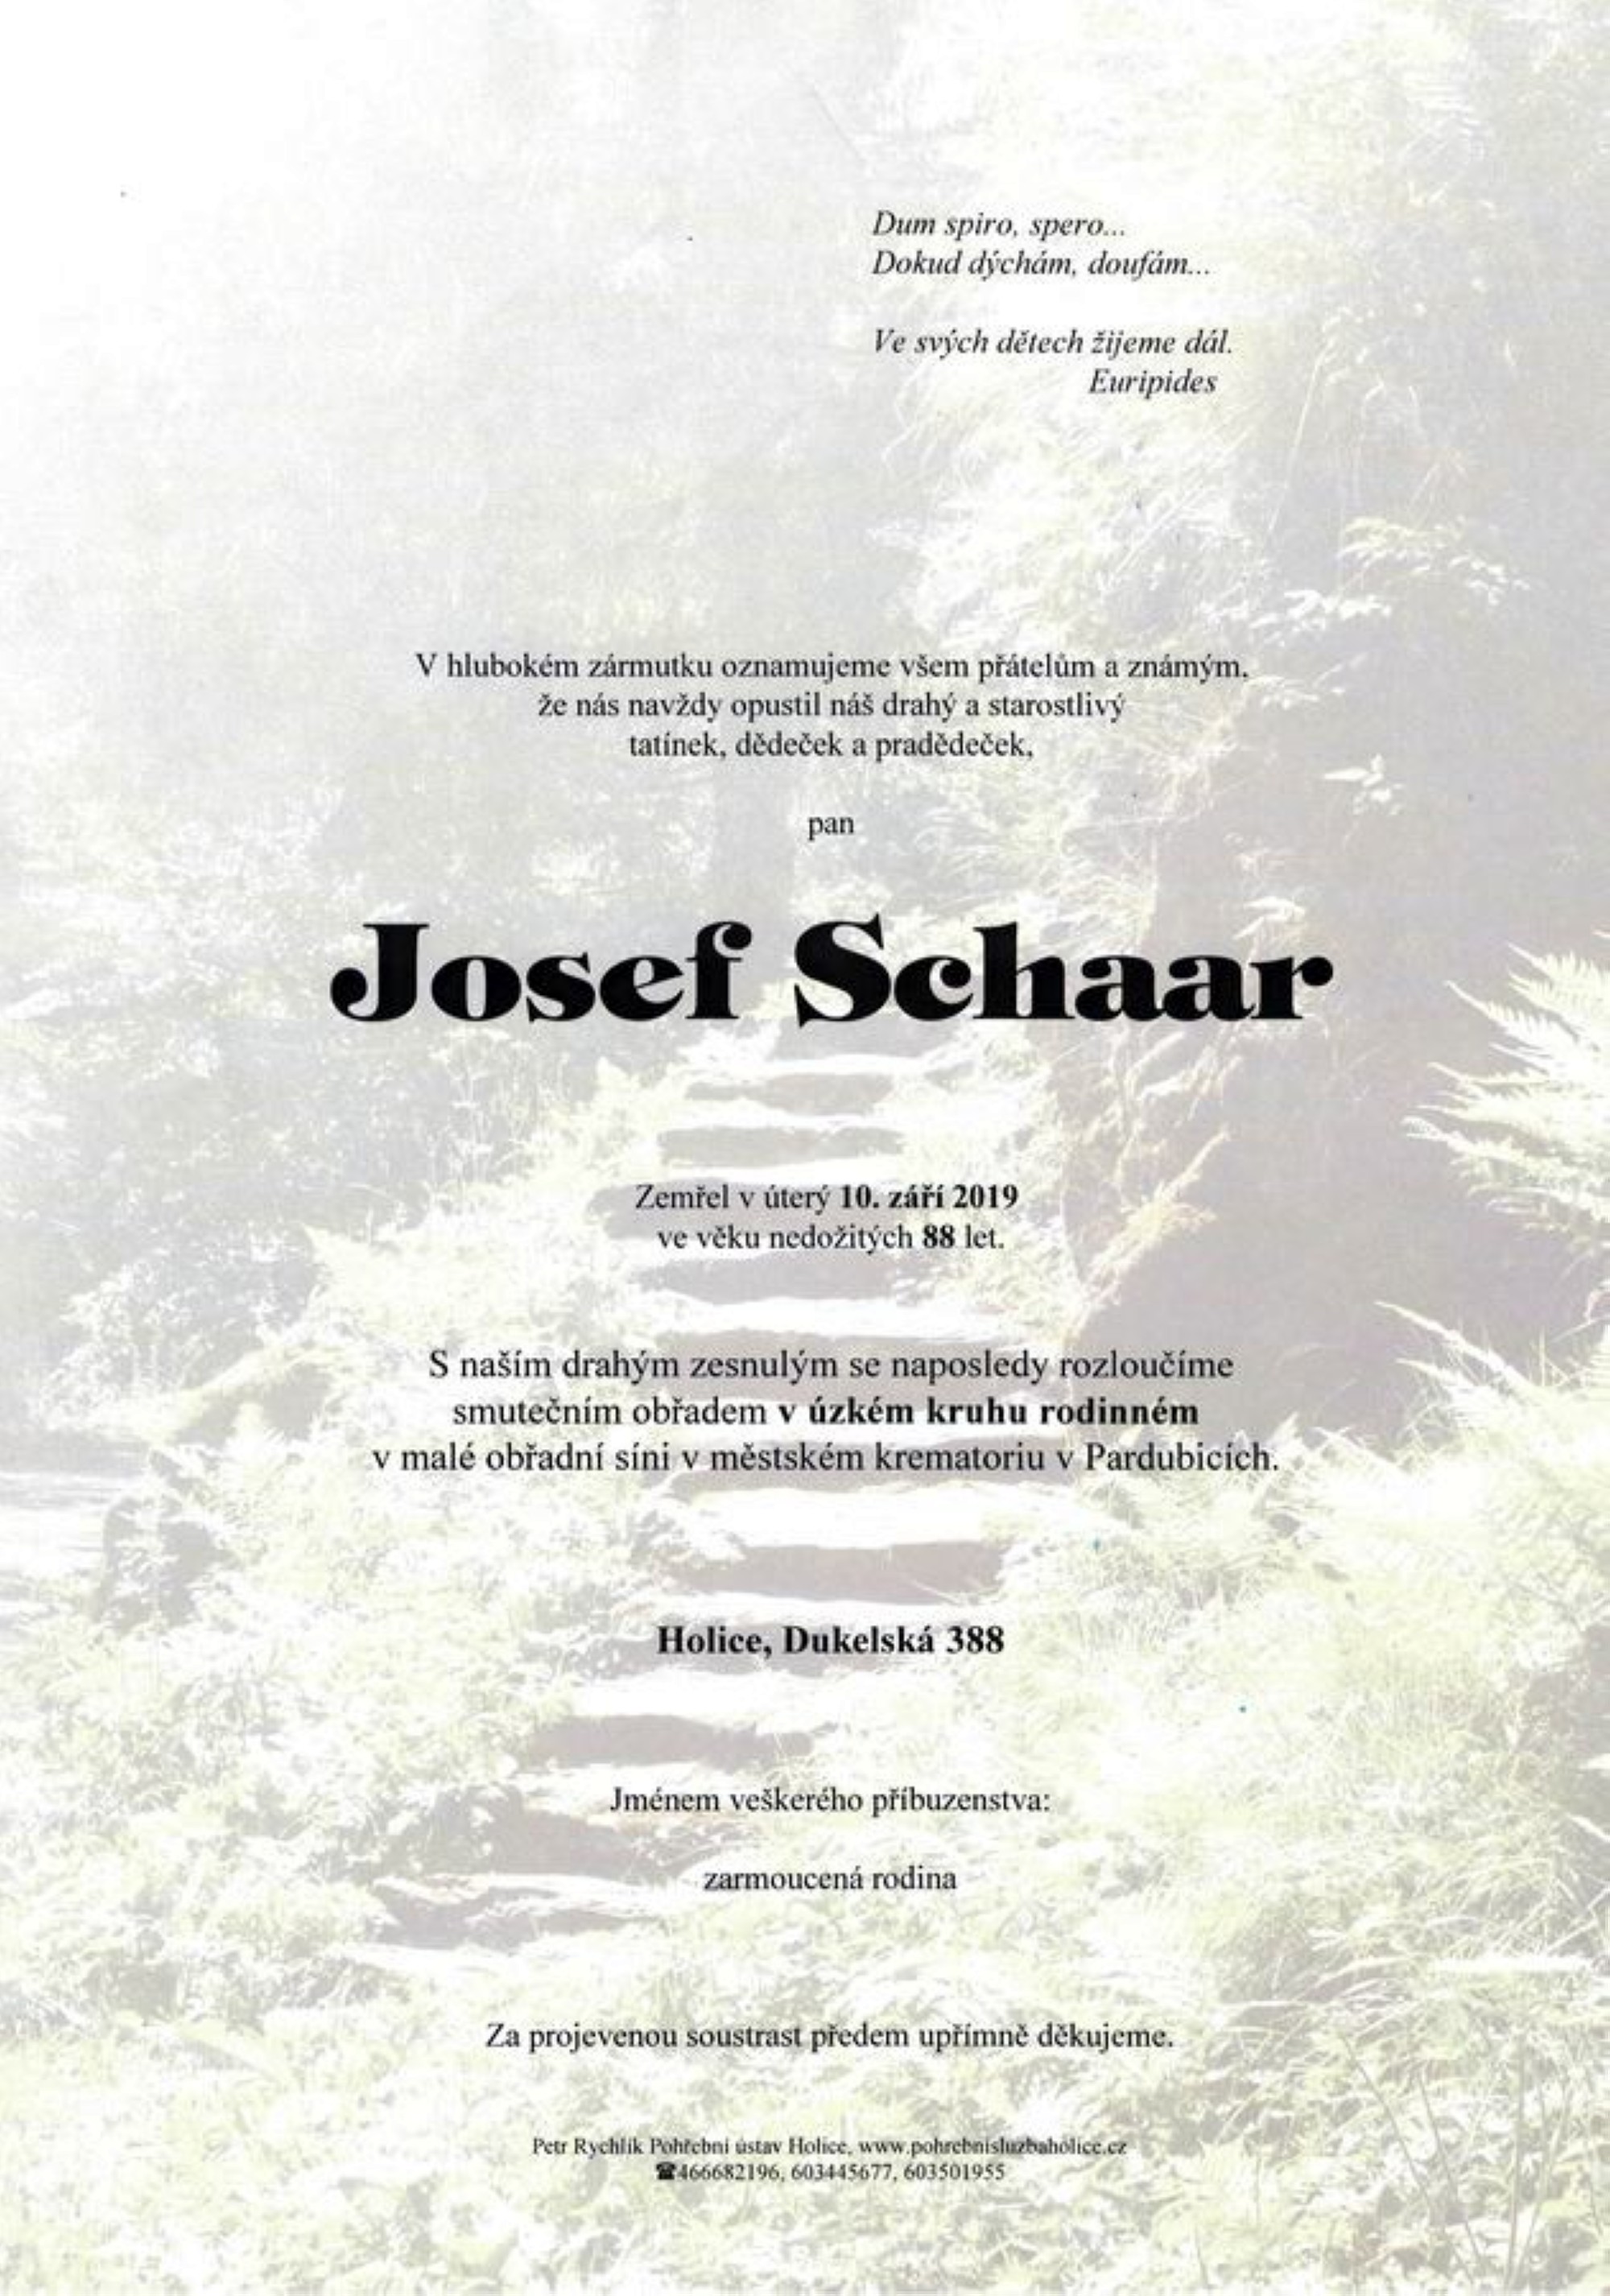 Josef Schaar